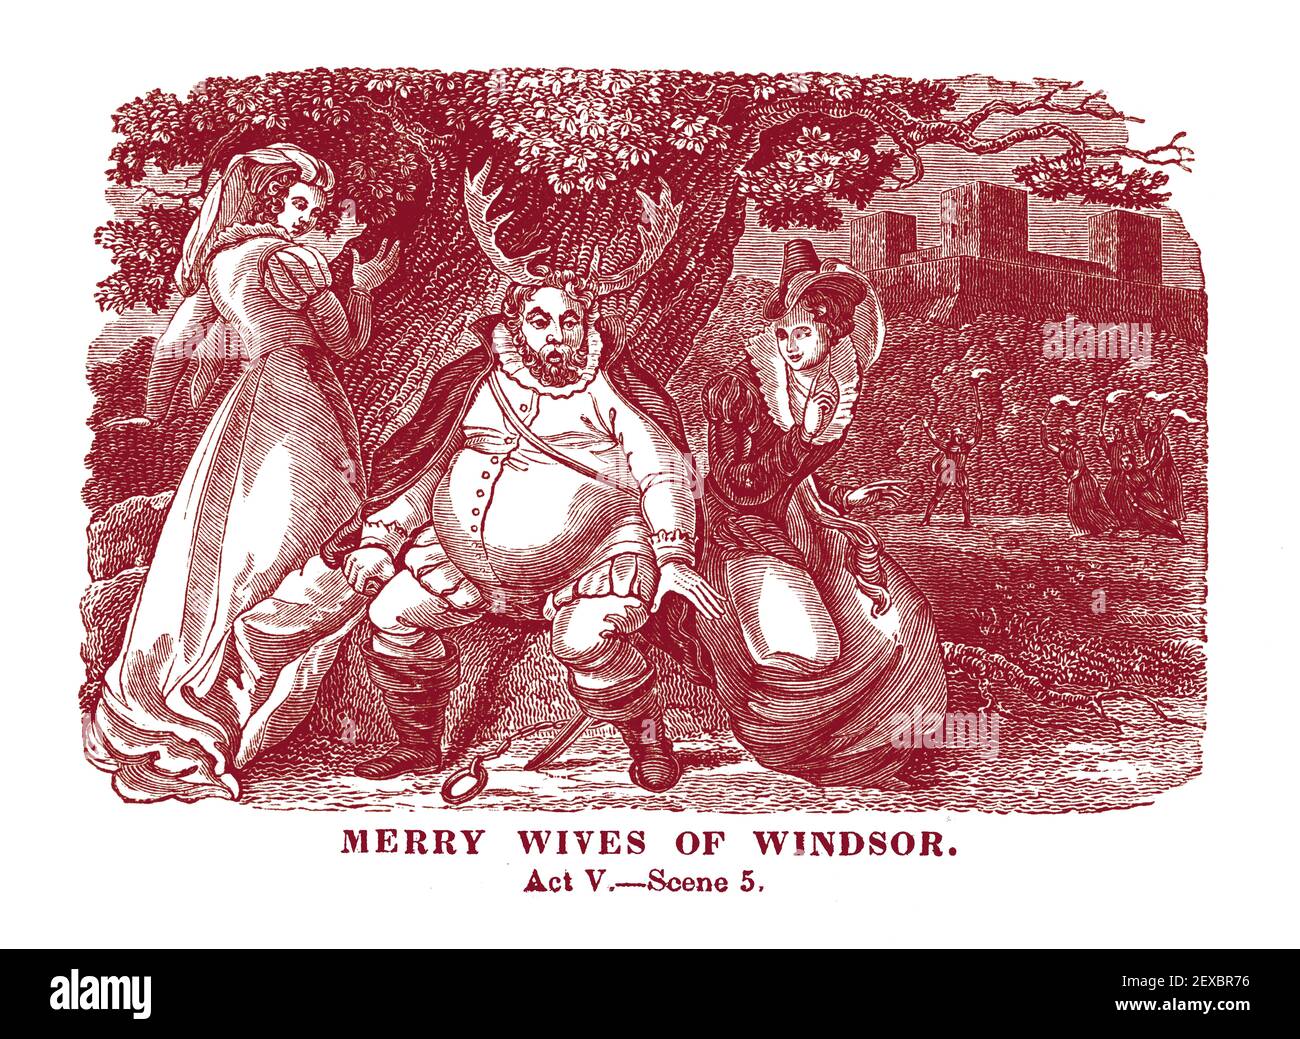 Ein Stich aus dem Jahr 1834, der eine Szene (V. Akt, Szene 5) aus William Shakespeares Stück 'Merry Wives of Windsor' darstellt, digital koloriert. Stockfoto